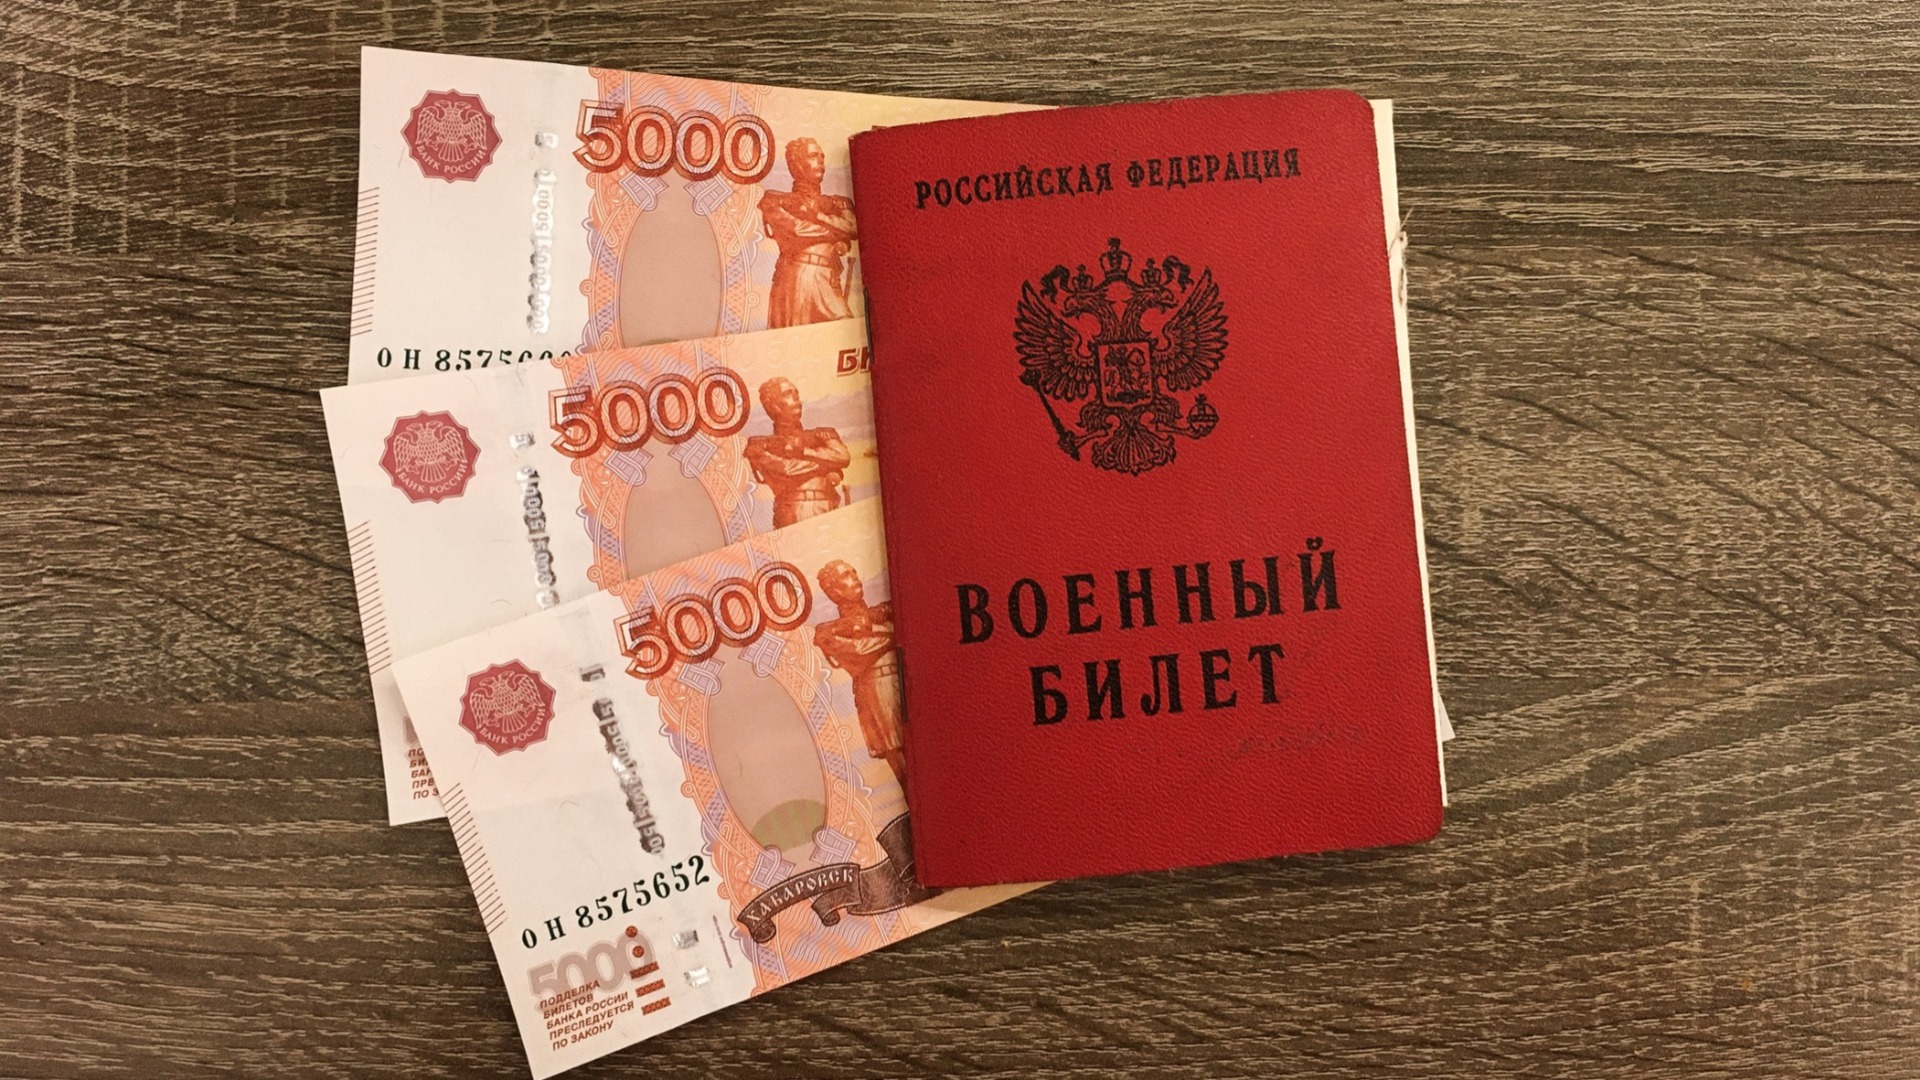 Жителей ХМАО будут штрафовать на 50 тысяч рублей за неявку в военкомат